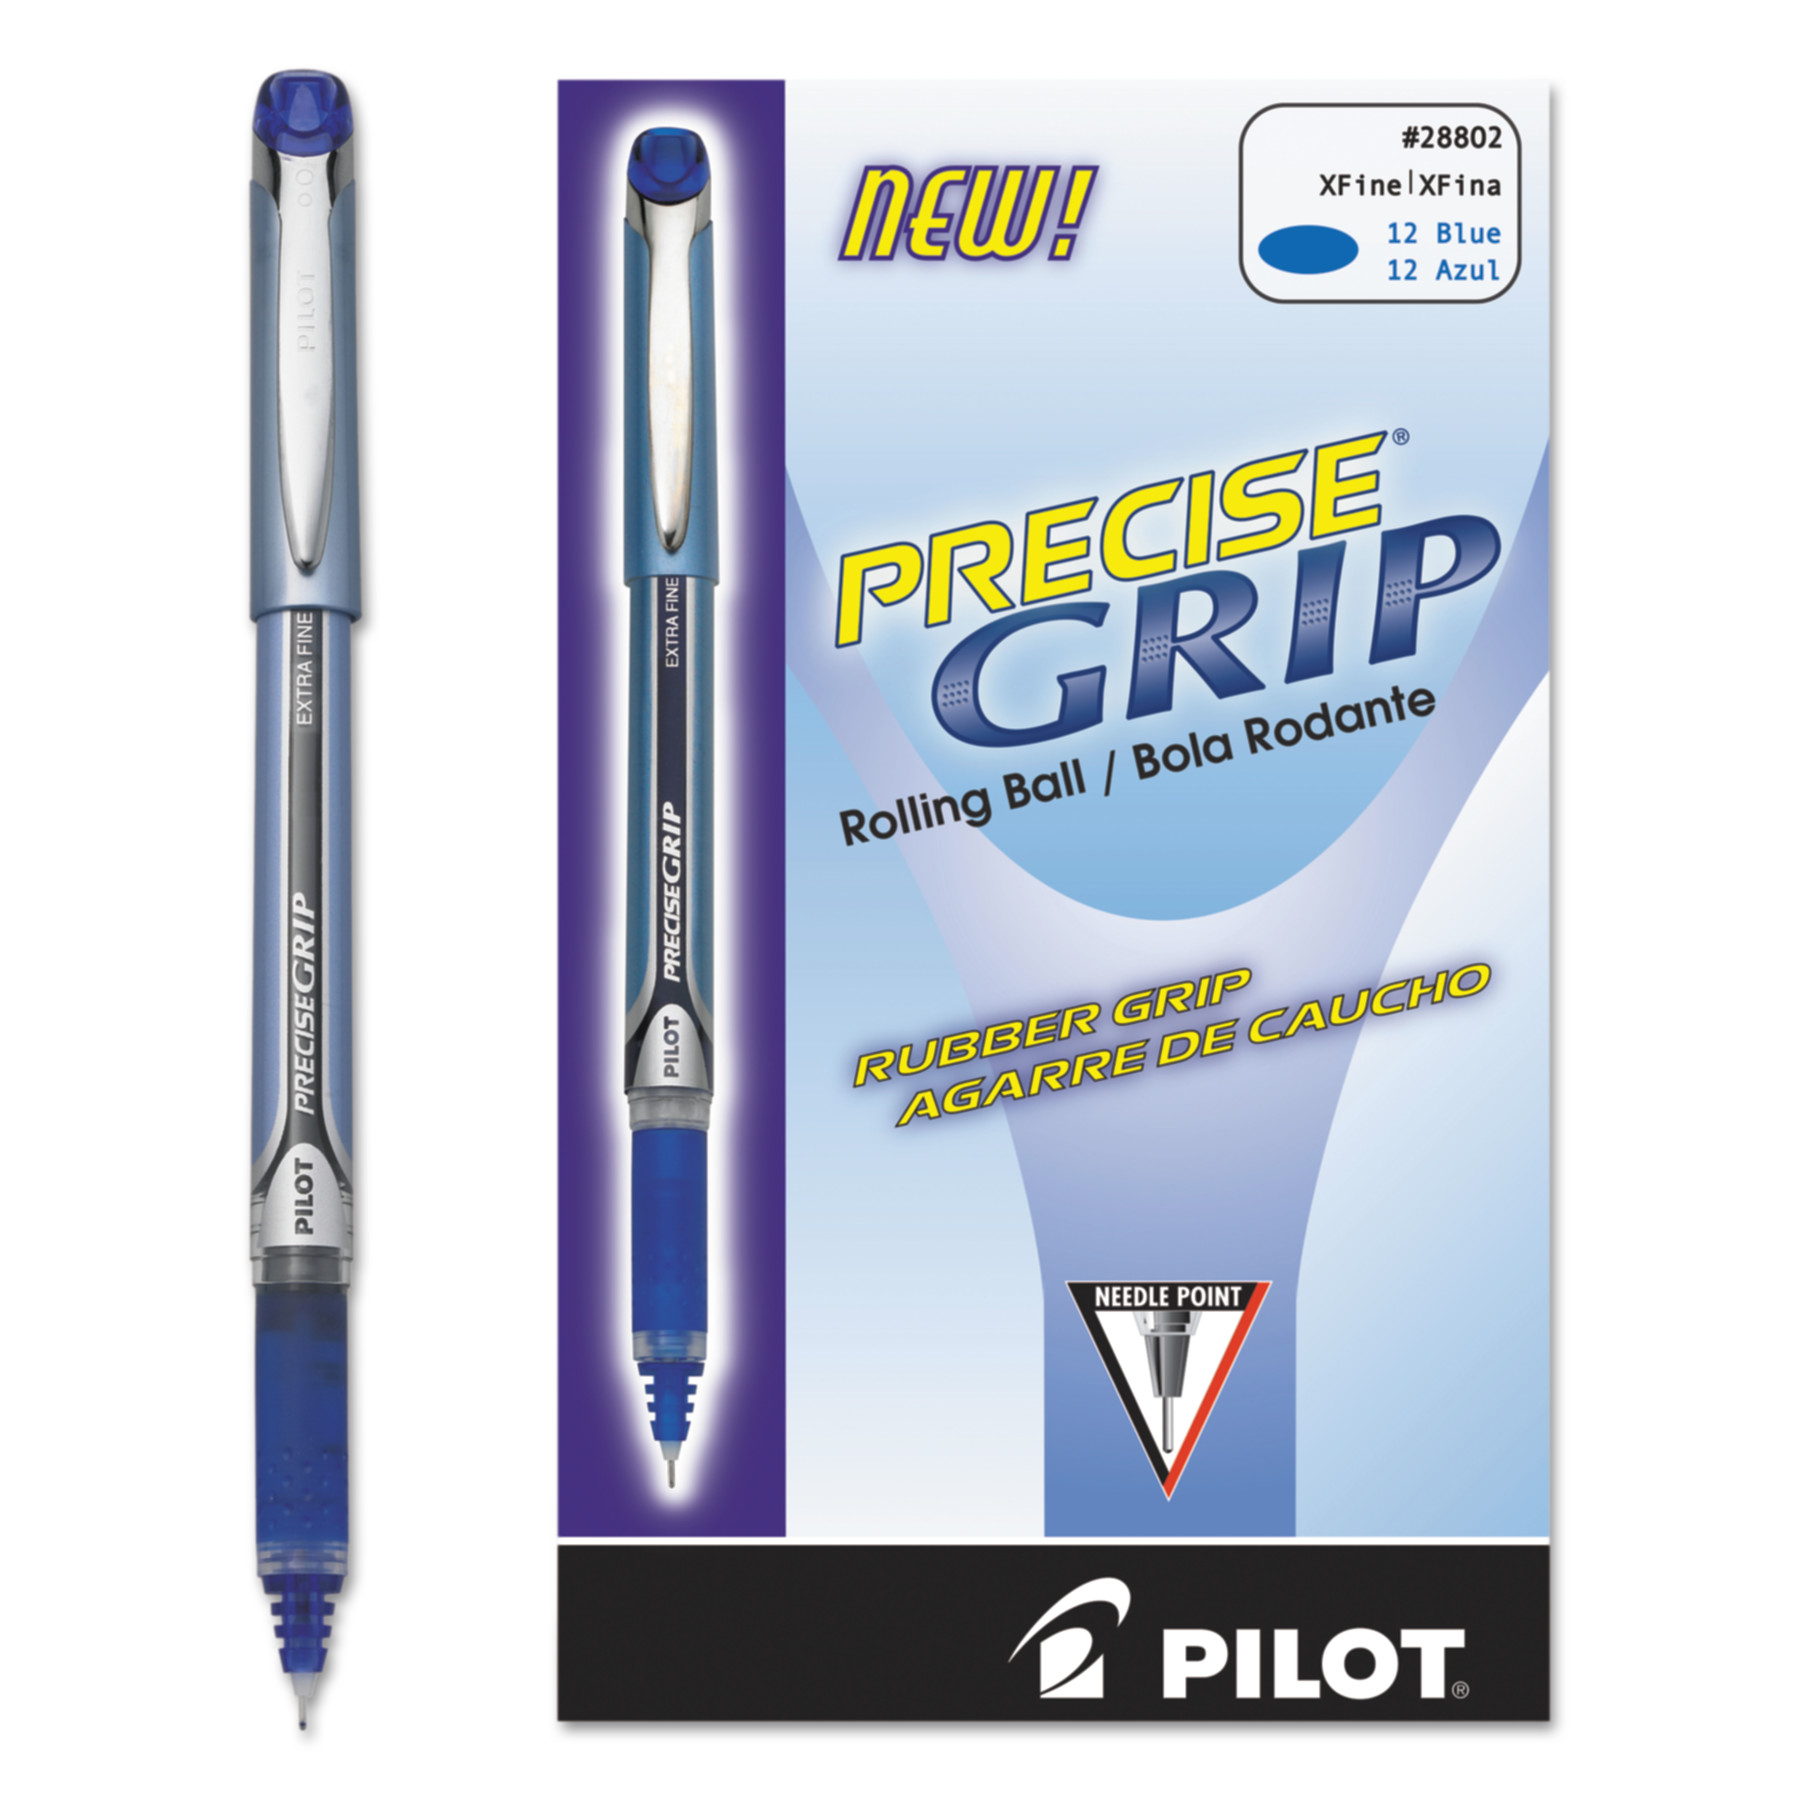  Pilot 28802 Precise Grip Stick Roller Ball Pen, Extra-Fine 0.5mm, Blue Ink, Blue Barrel (PIL28802) 